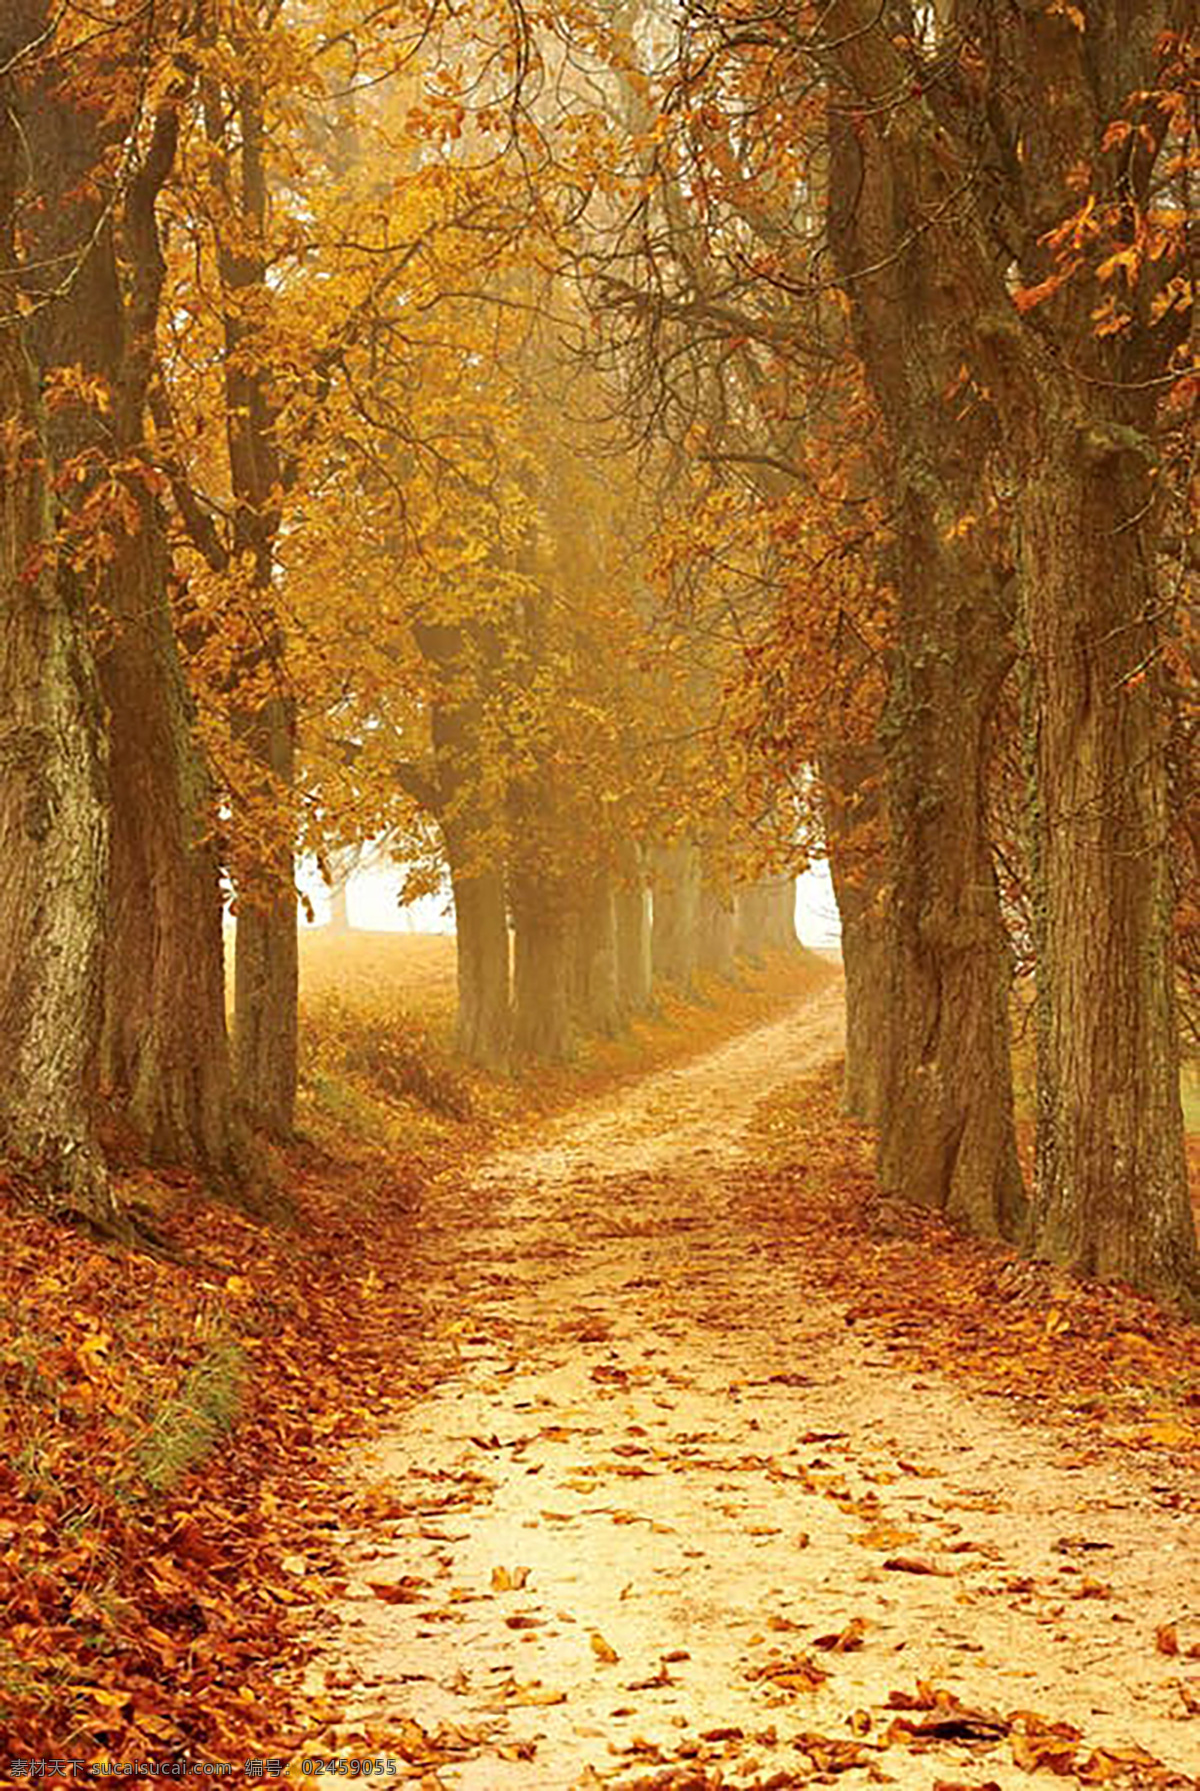 树木 旅游 拍照 背景 路 大自然 落叶 季节 自然景观 自然风景